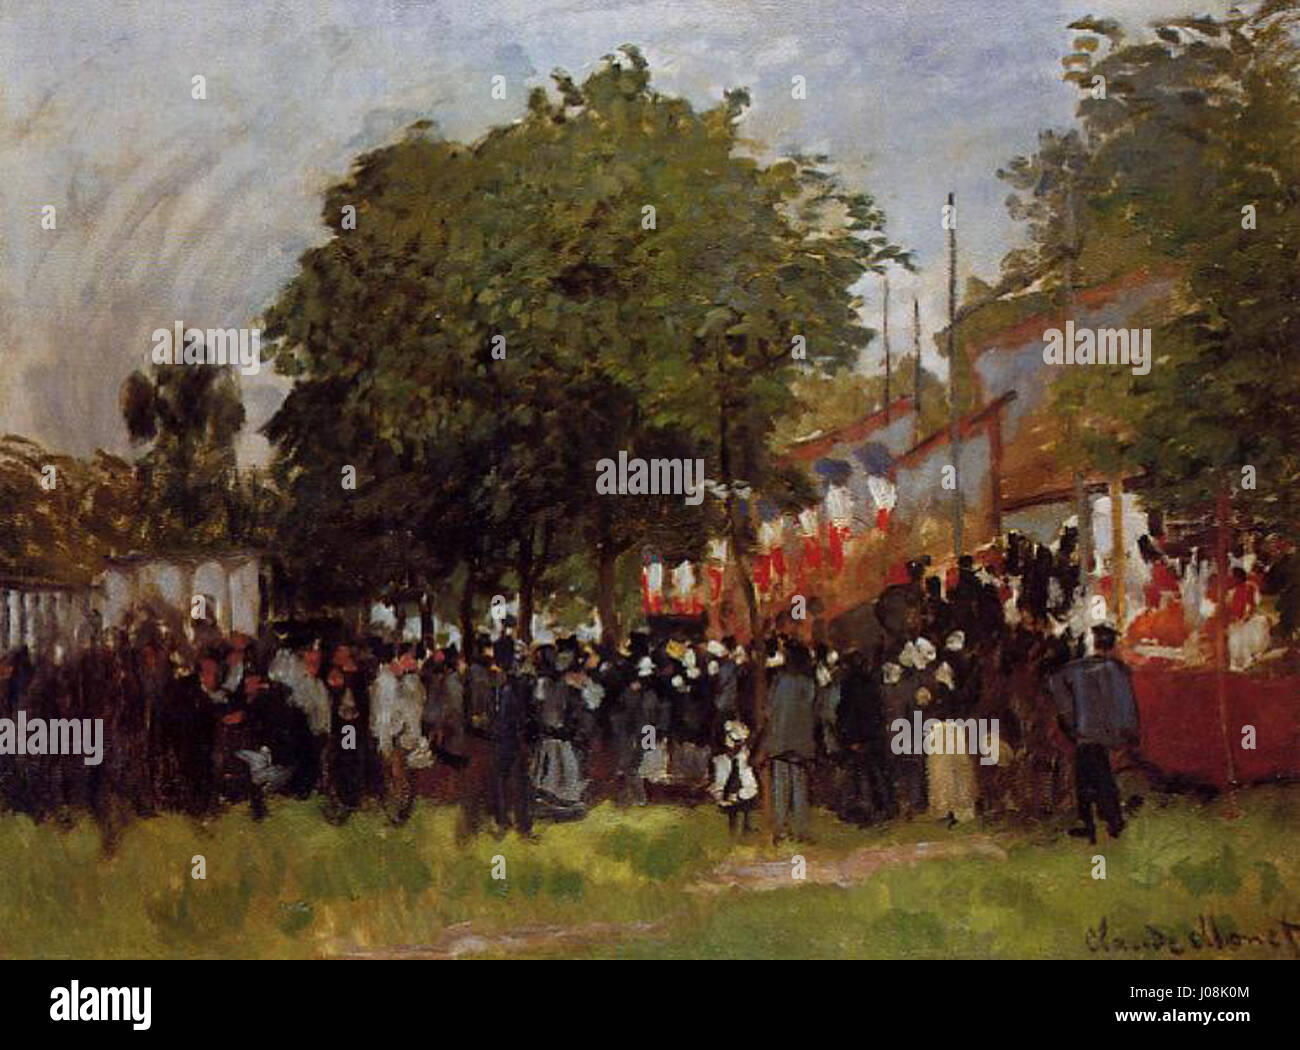 Claude Monet - La fête d'Argenteuil Stock Photo